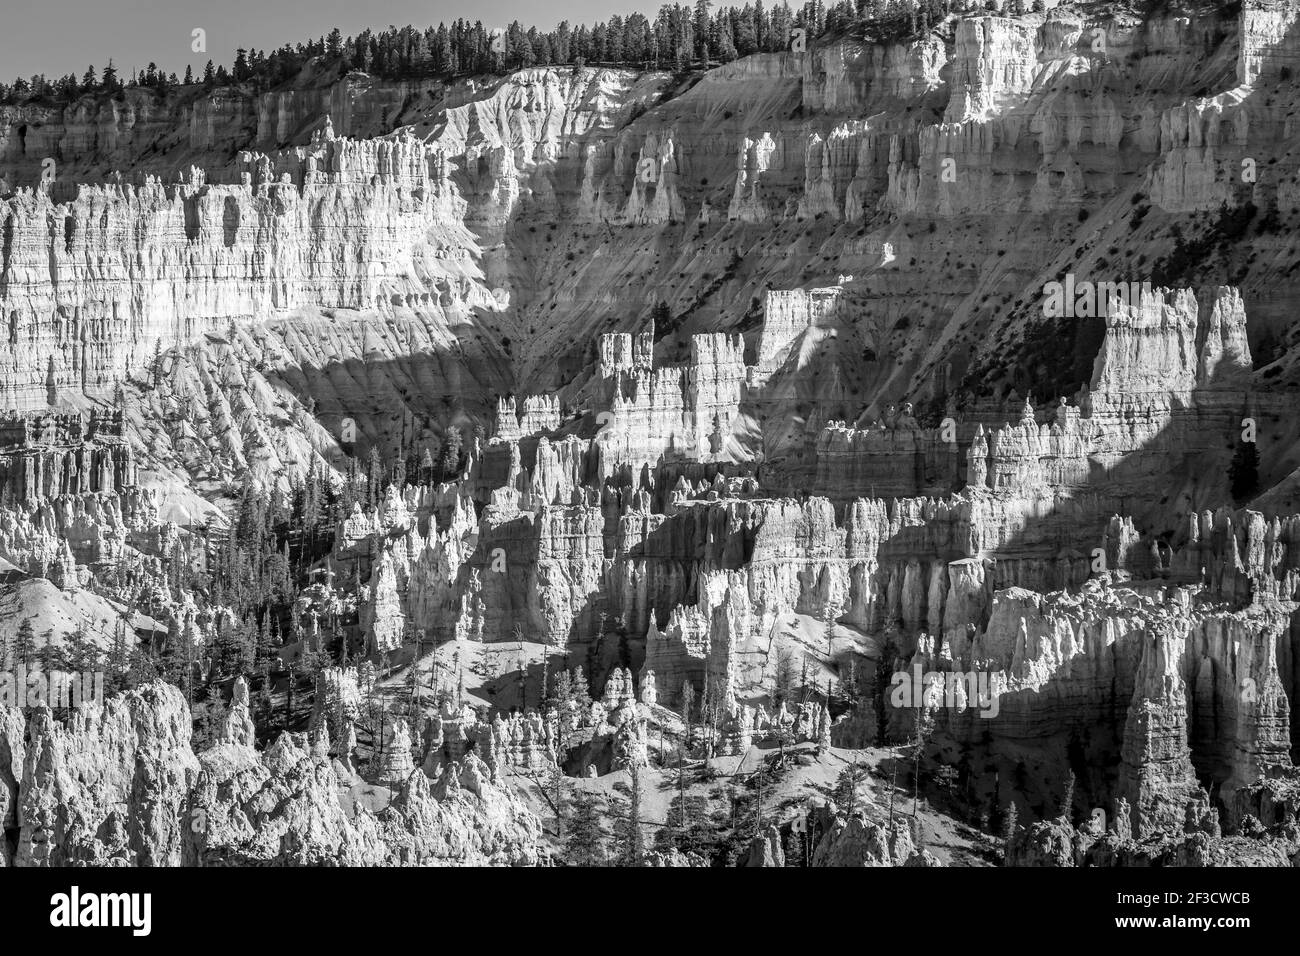 Parc national de Bryce Canyon, États-Unis. Paysage noir et blanc pris au coucher du soleil Banque D'Images